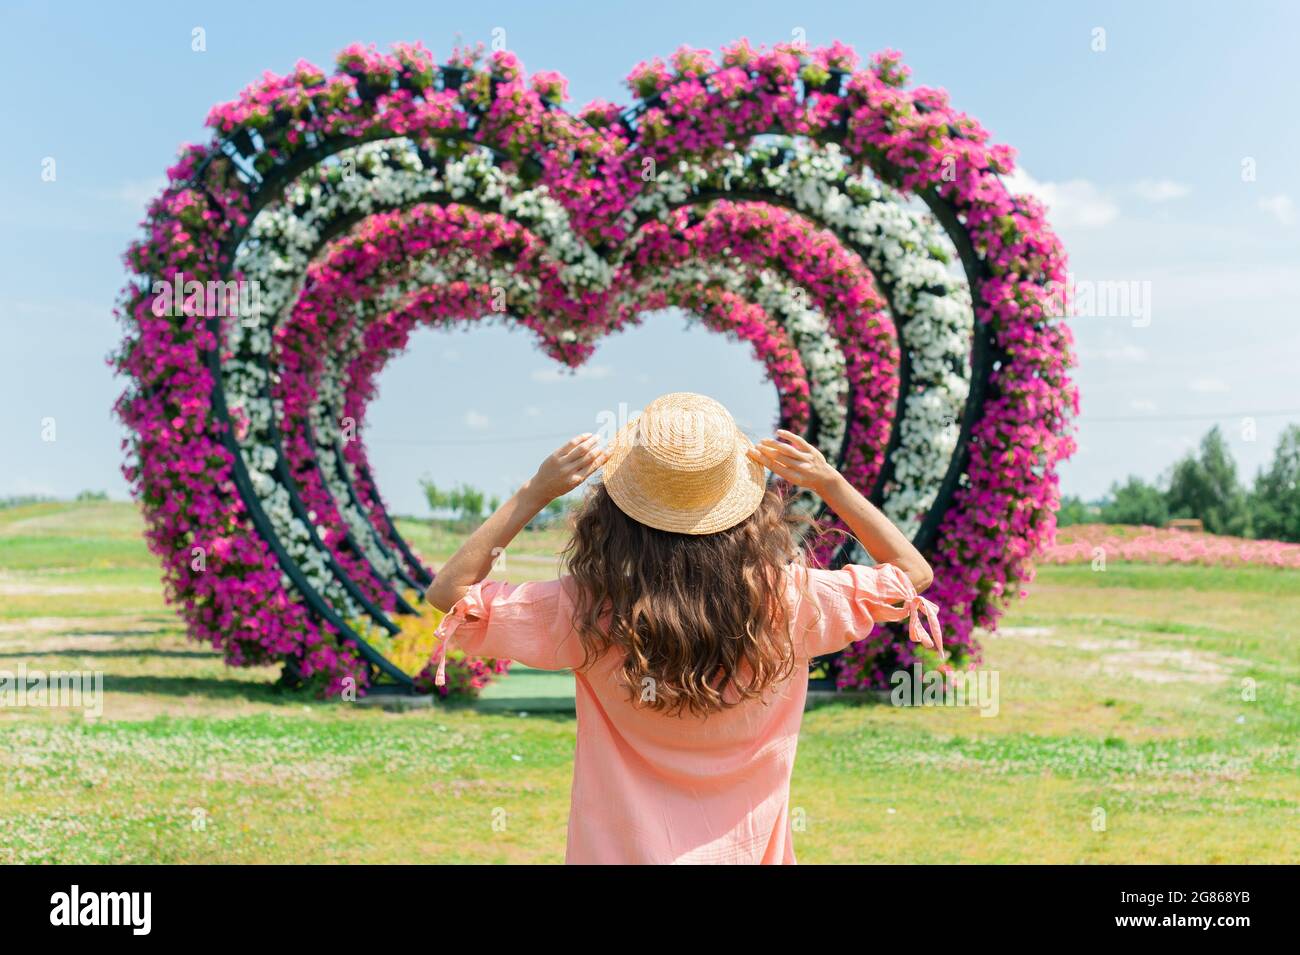 giovane donna in abito rosa e cappello si erge su uno sfondo di archi fioriti. Immagine con una messa a fuoco selettiva sul cappello. Arco nuziale a forma di cuore Foto Stock